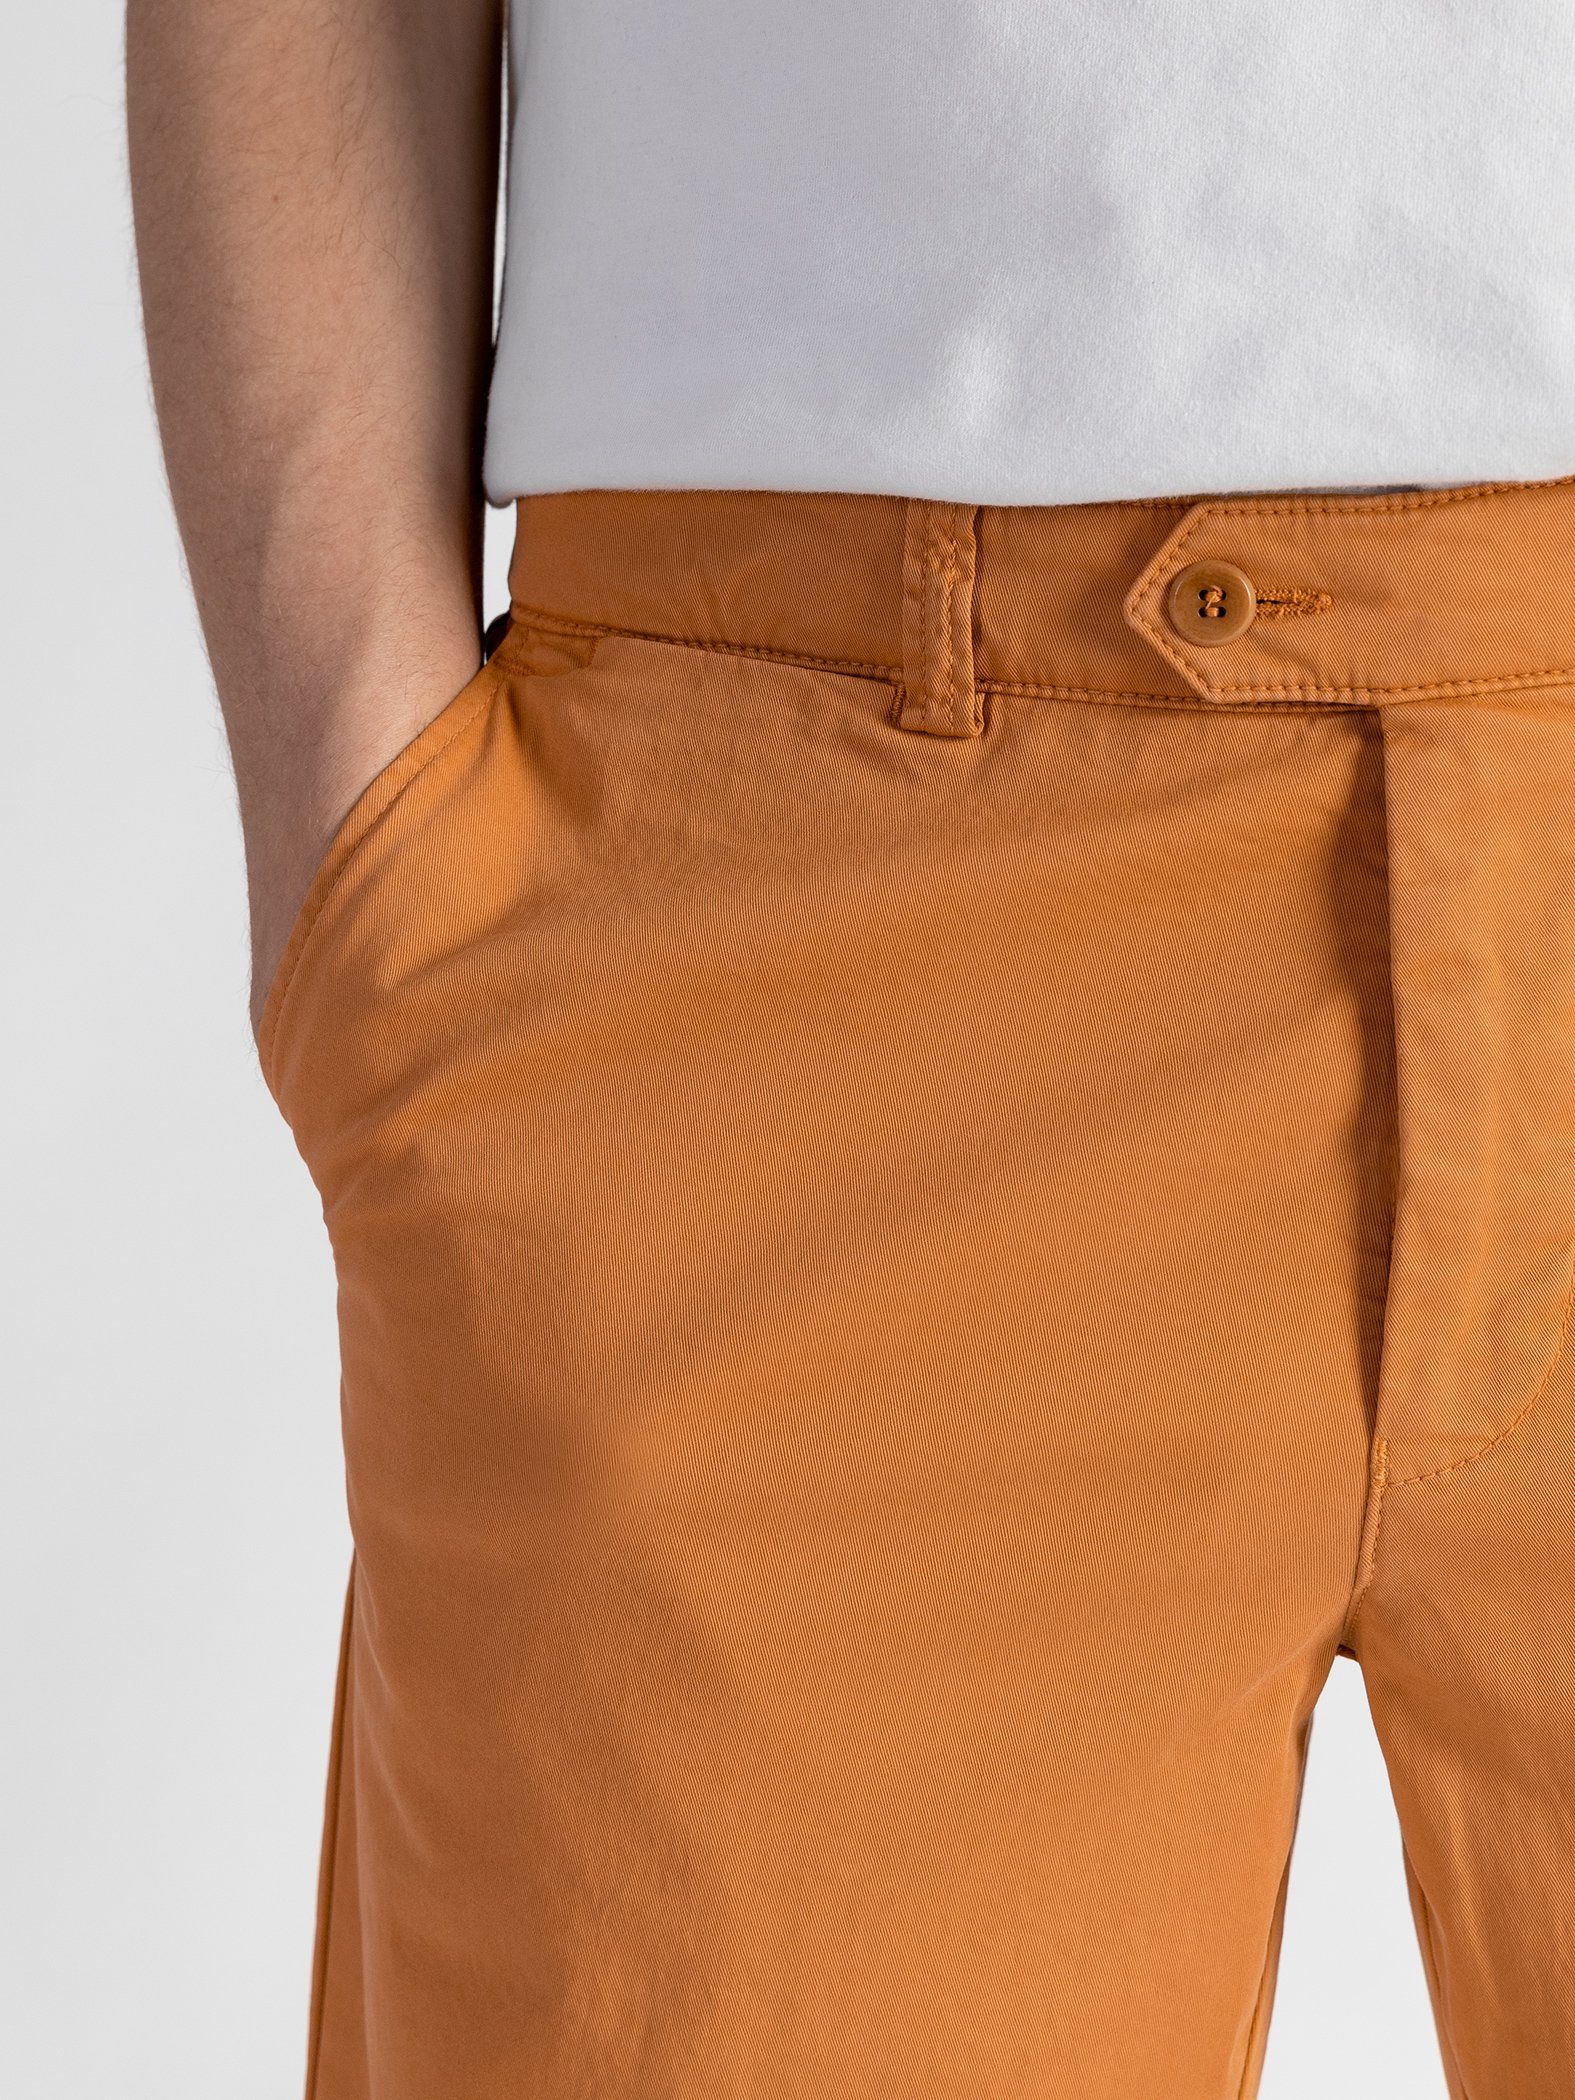 TwoMates Shorts Shorts mit elastischem Orange Farbauswahl, GOTS-zertifiziert Bund